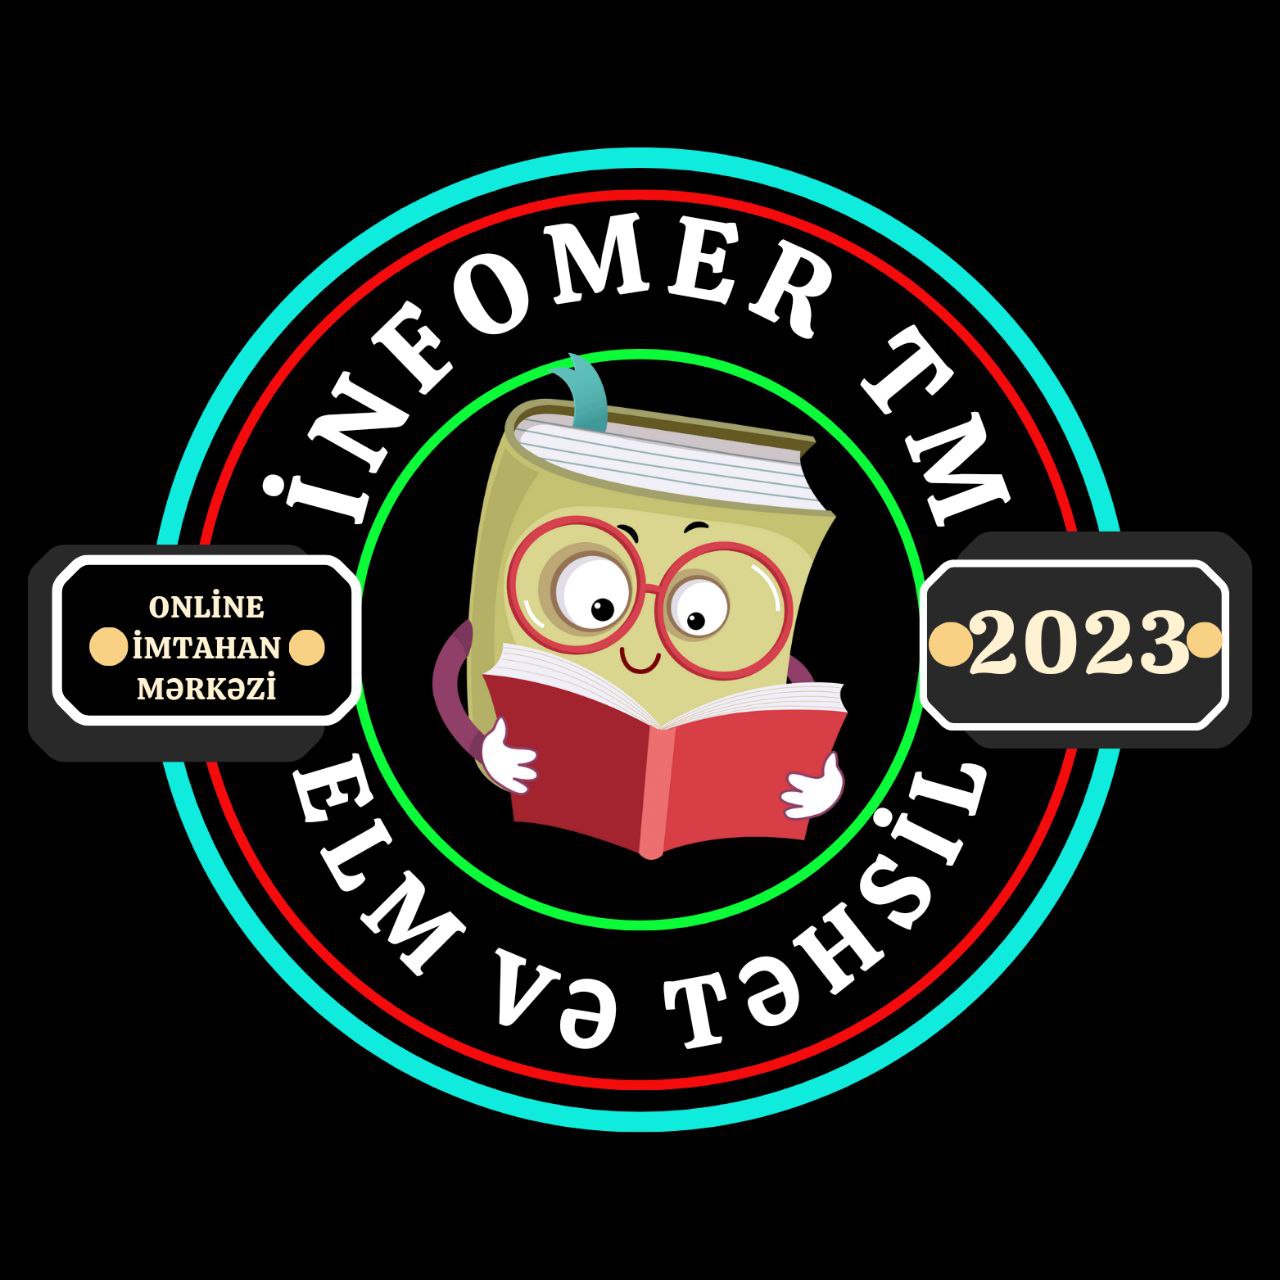 İNFOMER TM logo